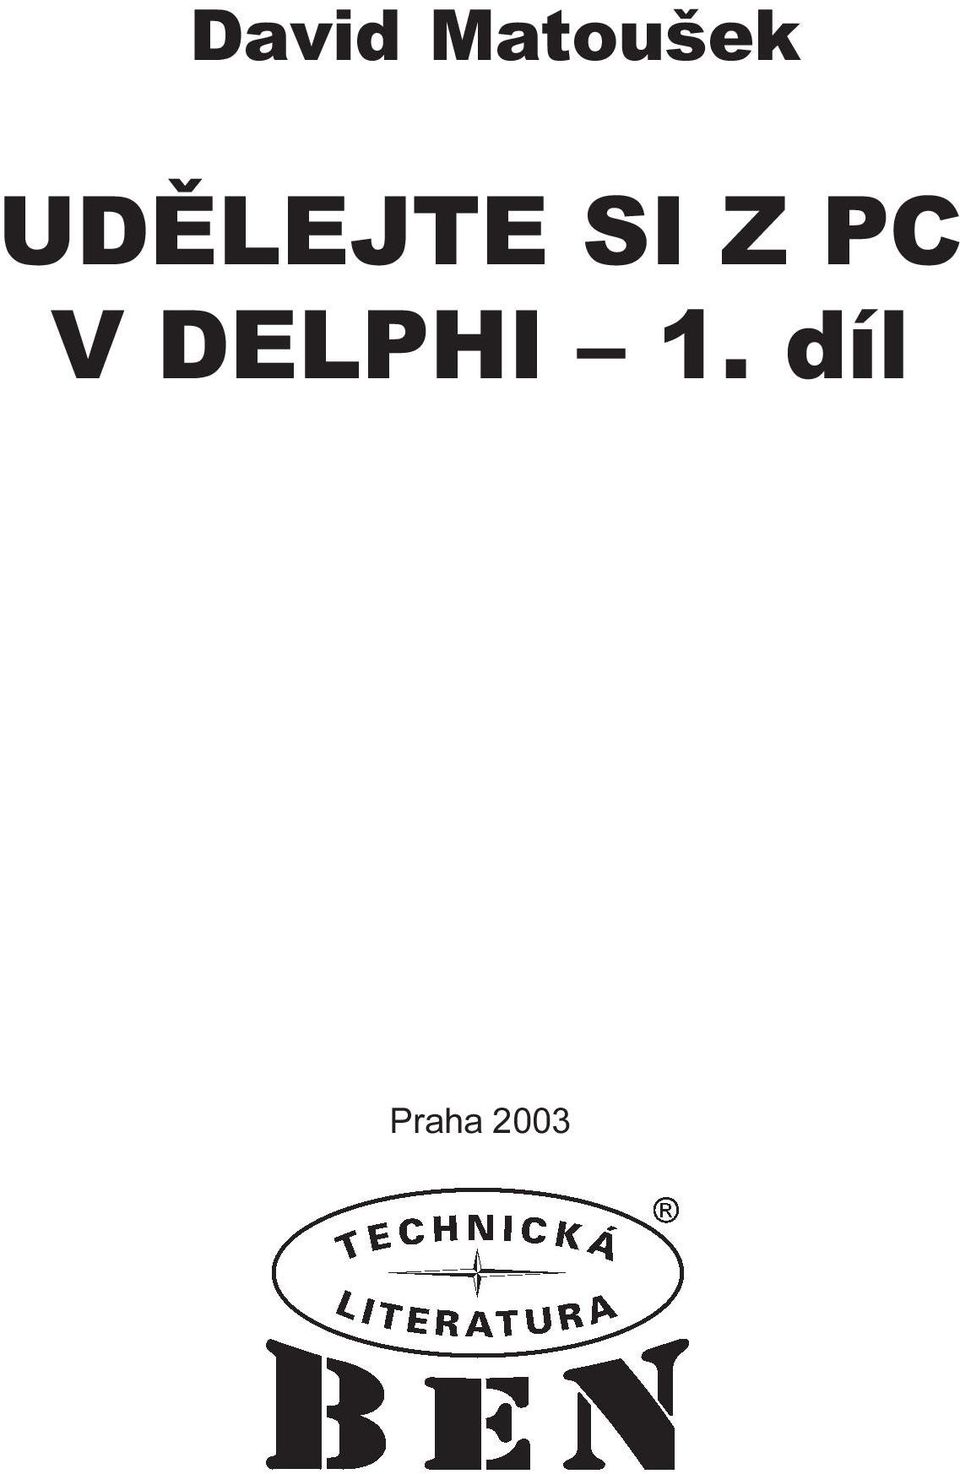 PC V DELPHI 1